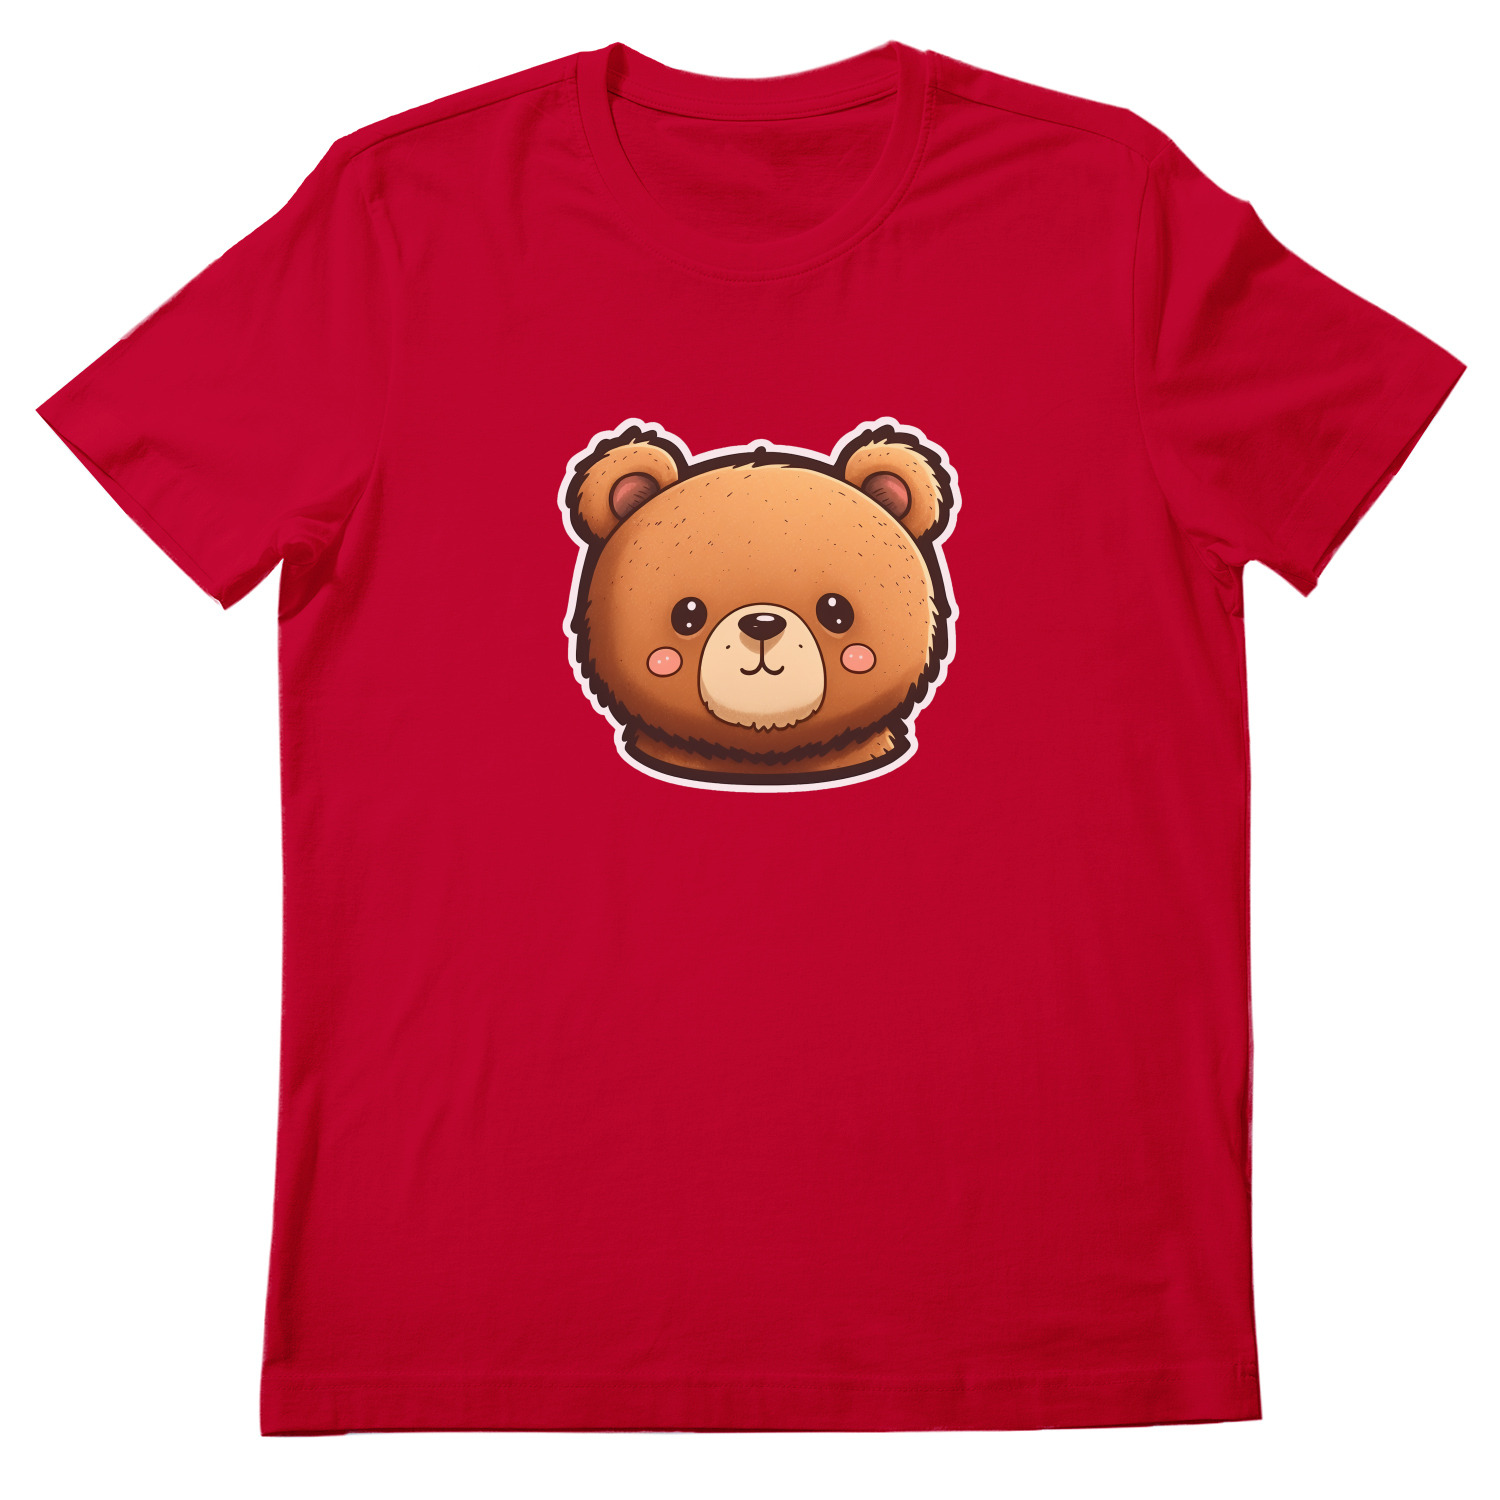 Футболка мишка. Черная футболка с мишкой. Футболка с медвежонком. Красная футболка с медведем.